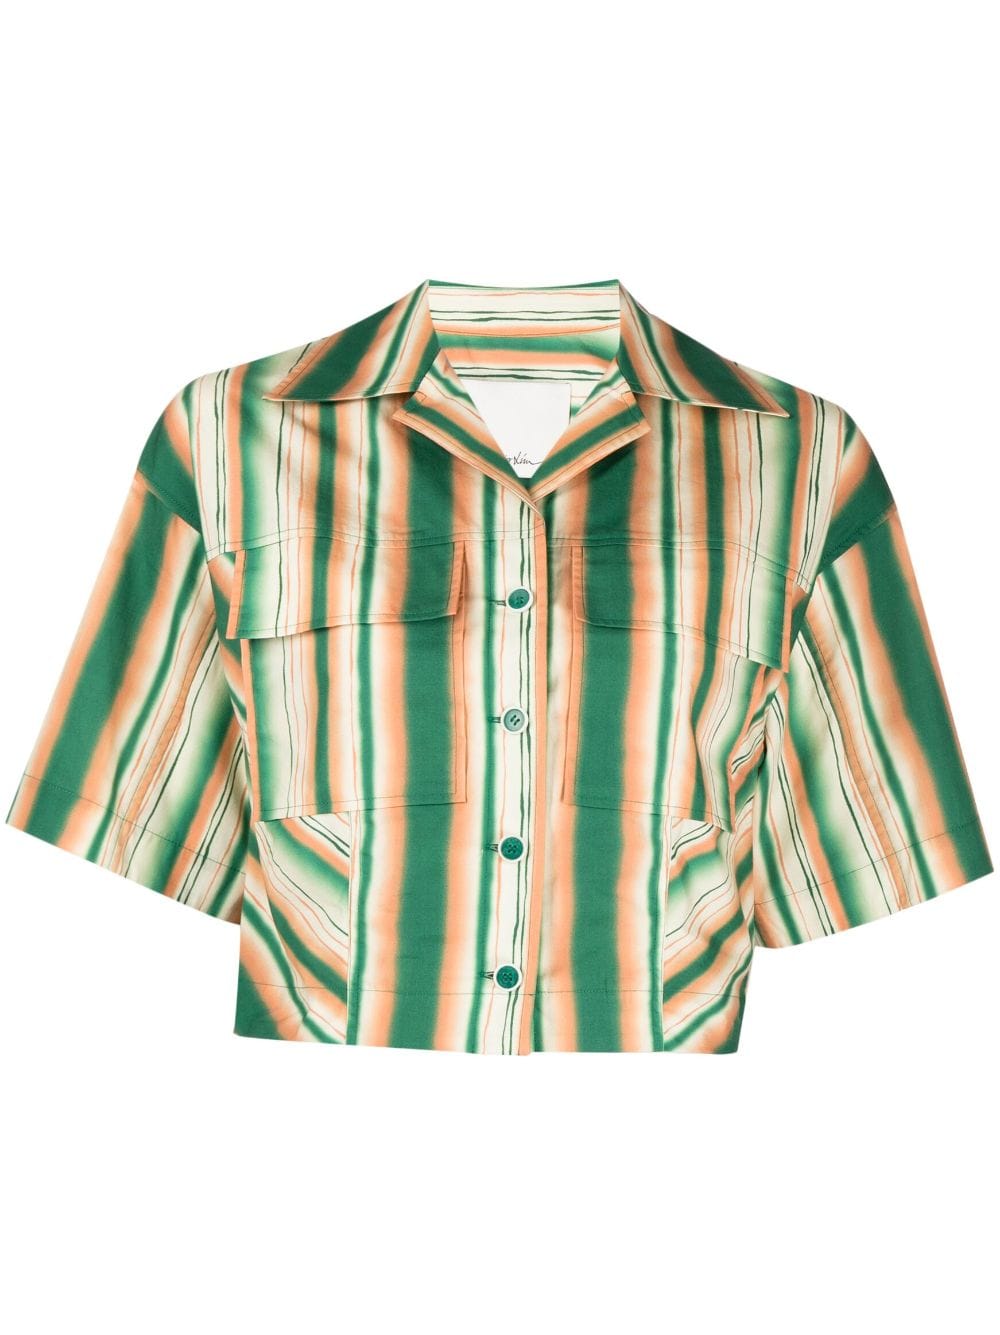 3.1 Phillip Lim striped cropped cotton shirt - Green von 3.1 Phillip Lim